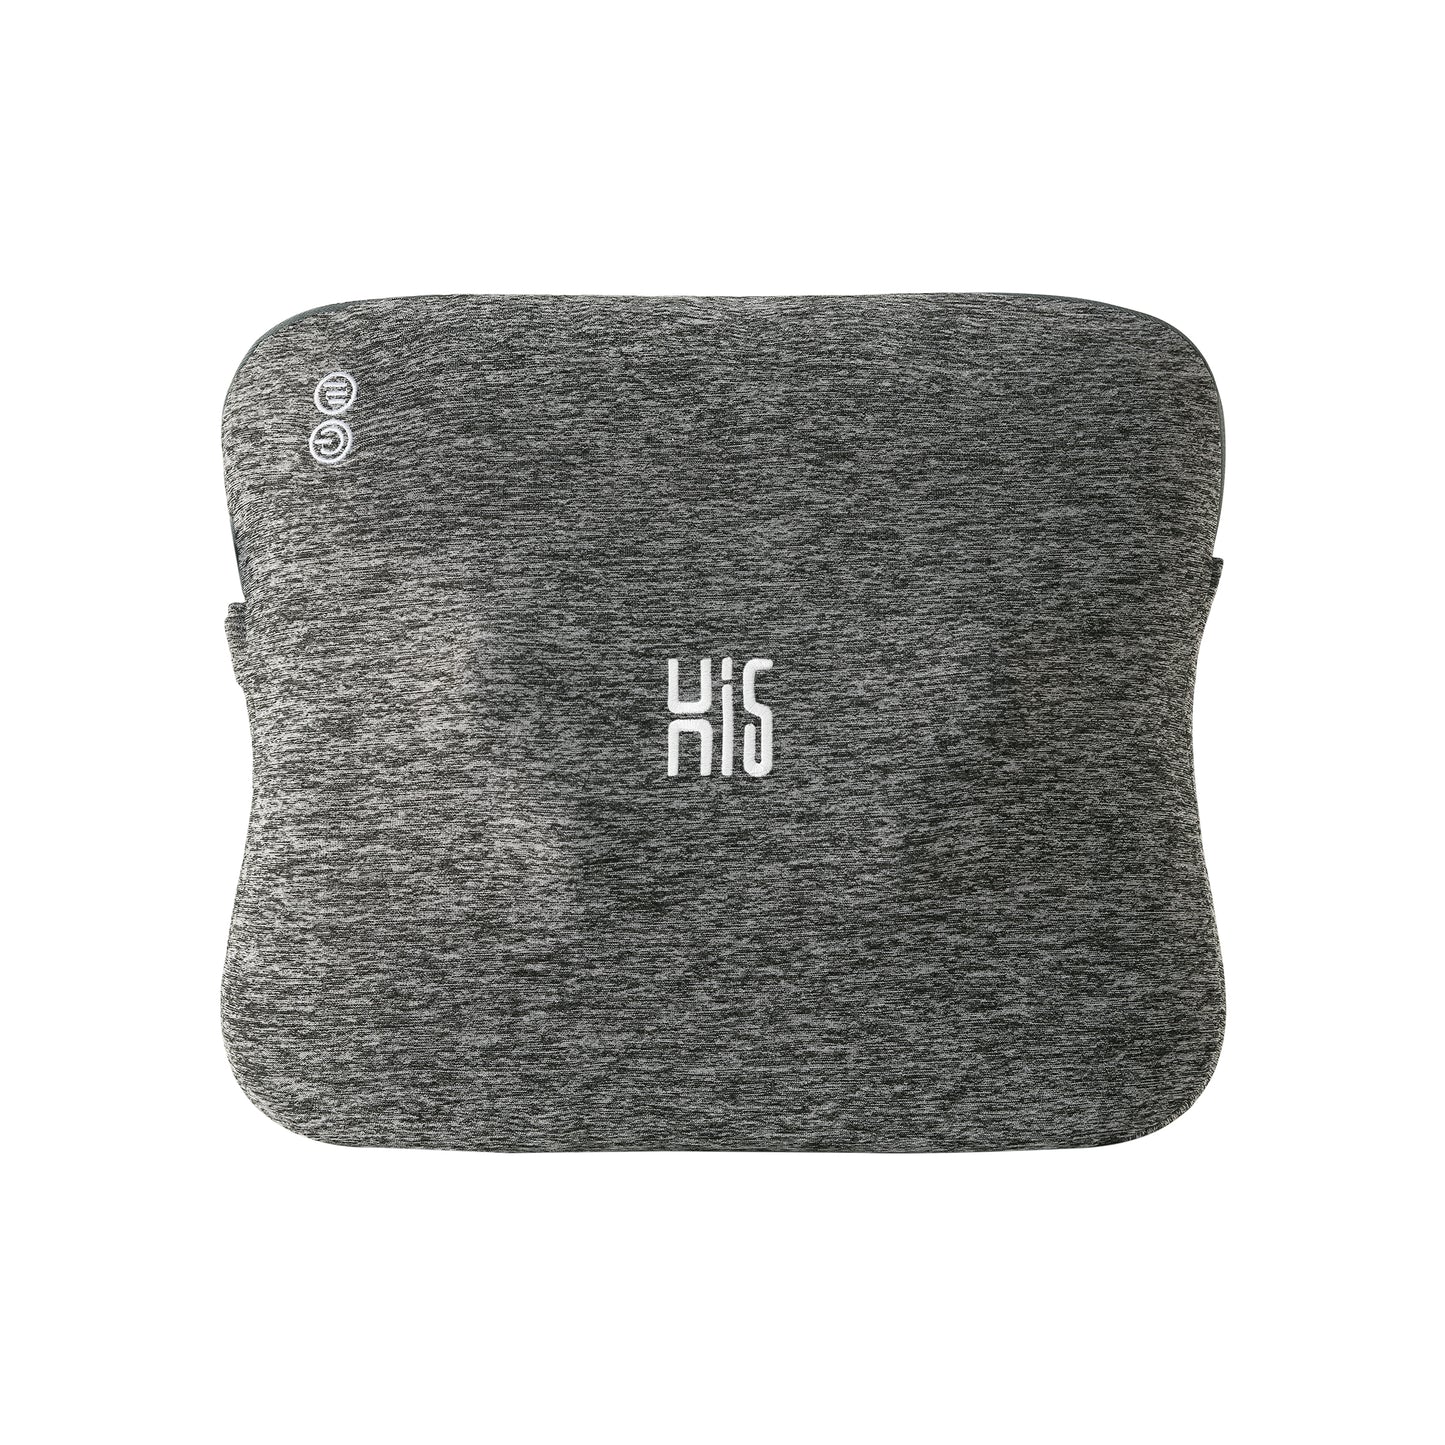 Hi5 Bravo Shiatsu Cojín de masaje con función de calefacción, 4 cabezales de masaje, apagado automático, funda lavable para hombros, cuello, espalda y piernas